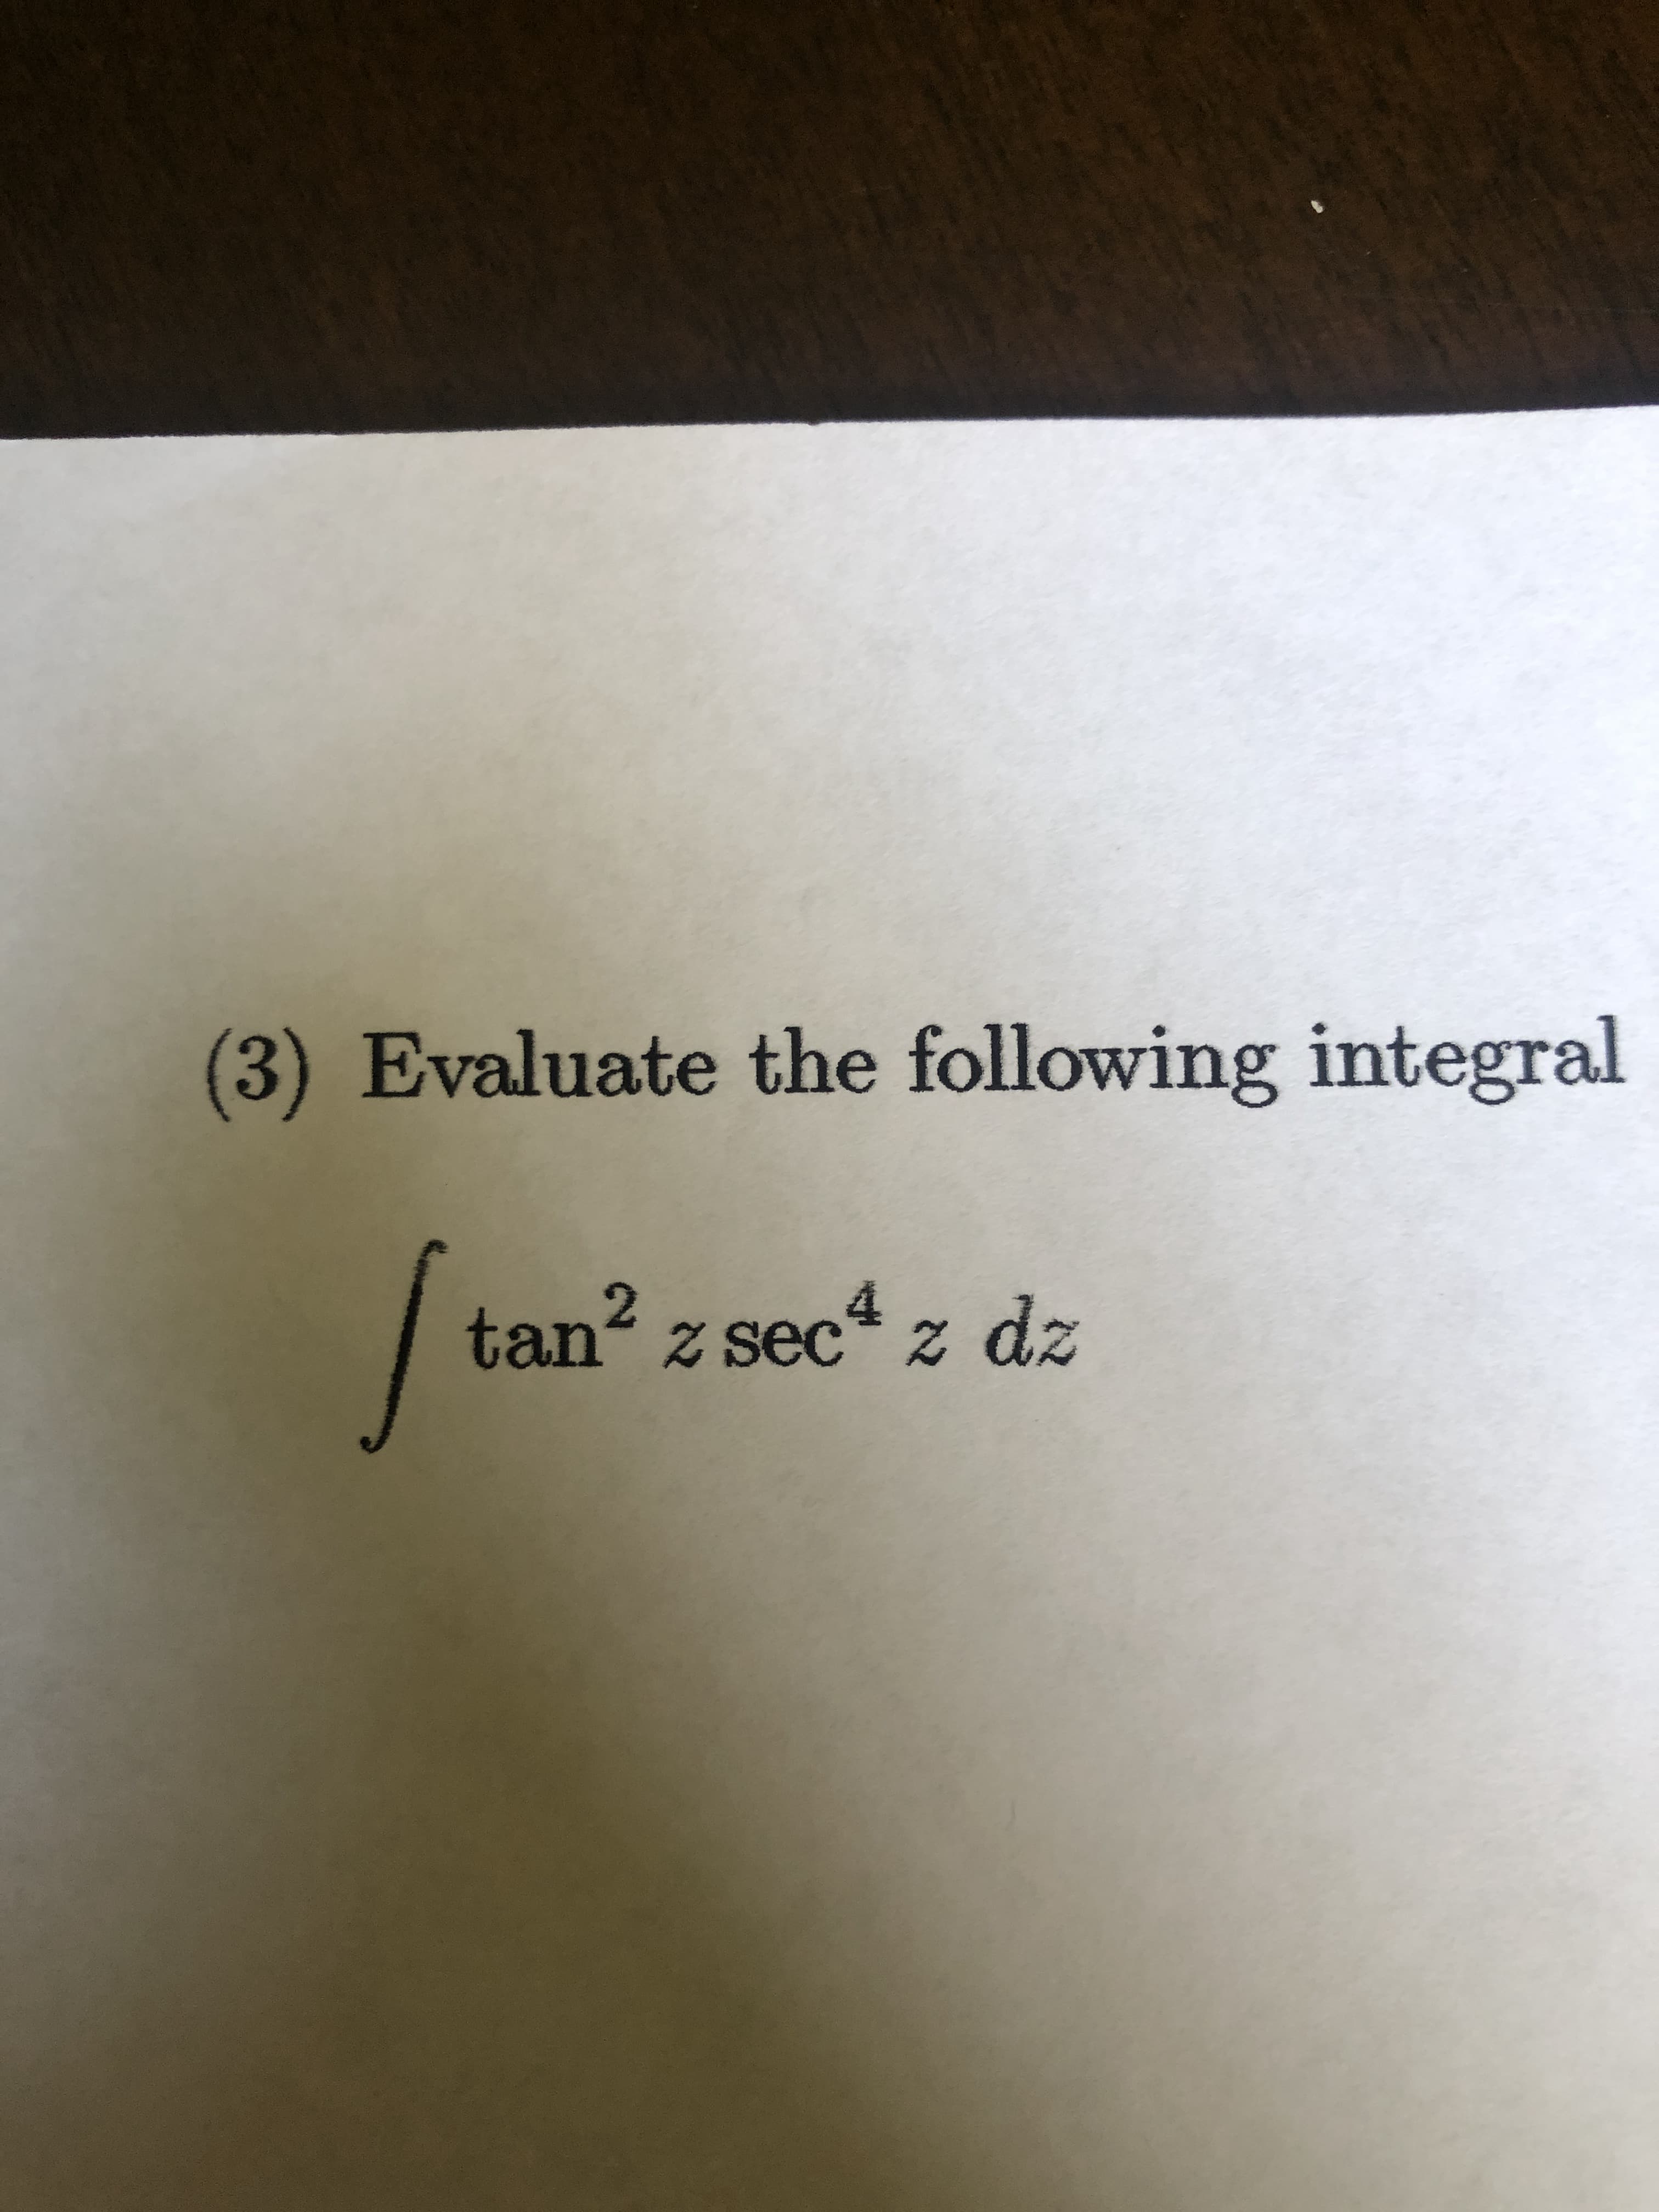 Evaluate the following integral
tan z sec* Z
2
dz
